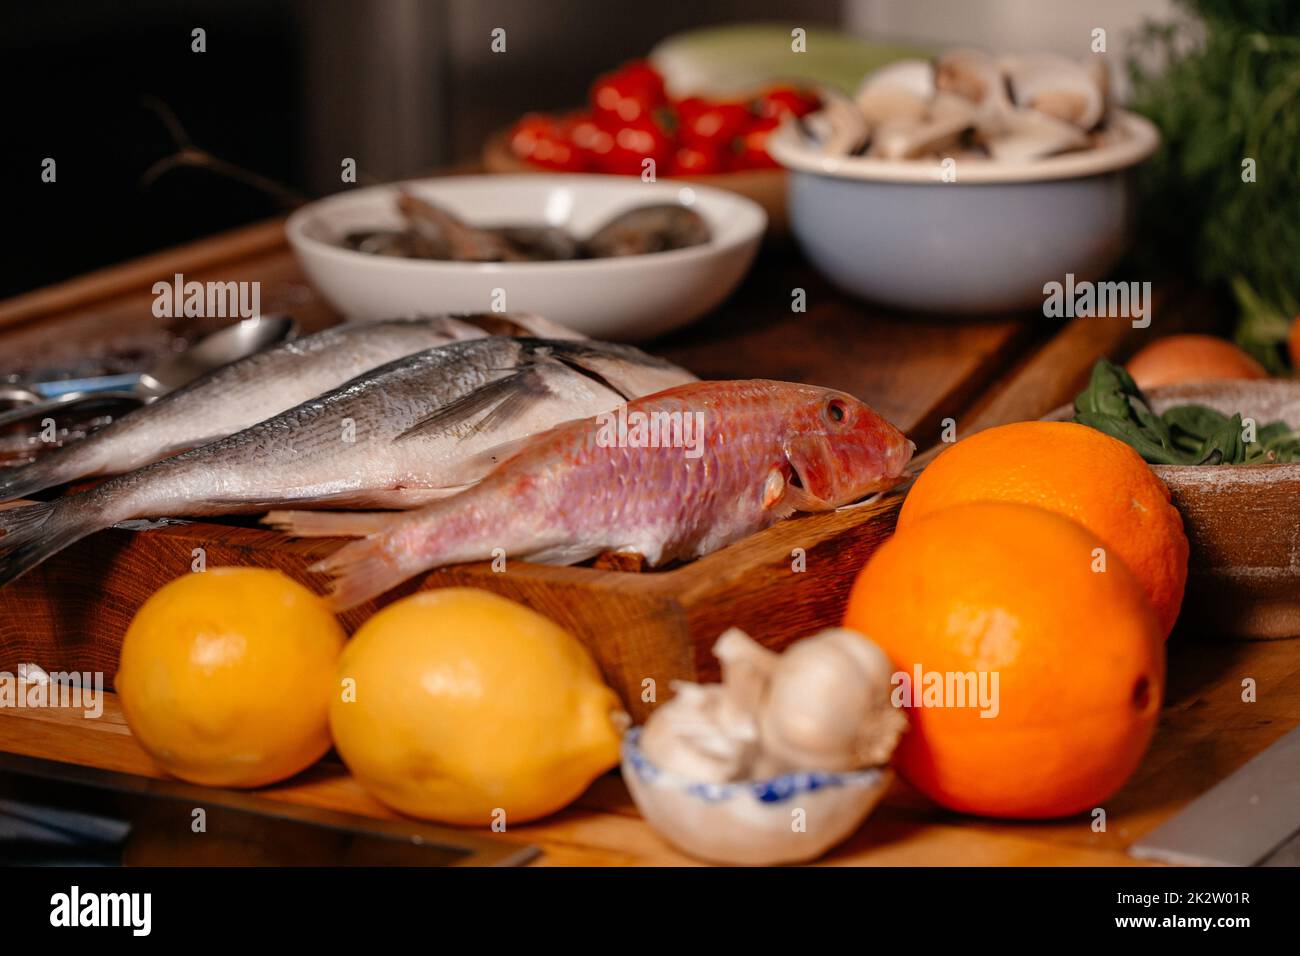 Orate di mare e conchiglie sul tavolo accanto a verdure e frutta. Ingredienti per preparare una deliziosa zuppa. Cucina raffinata. Foto Stock